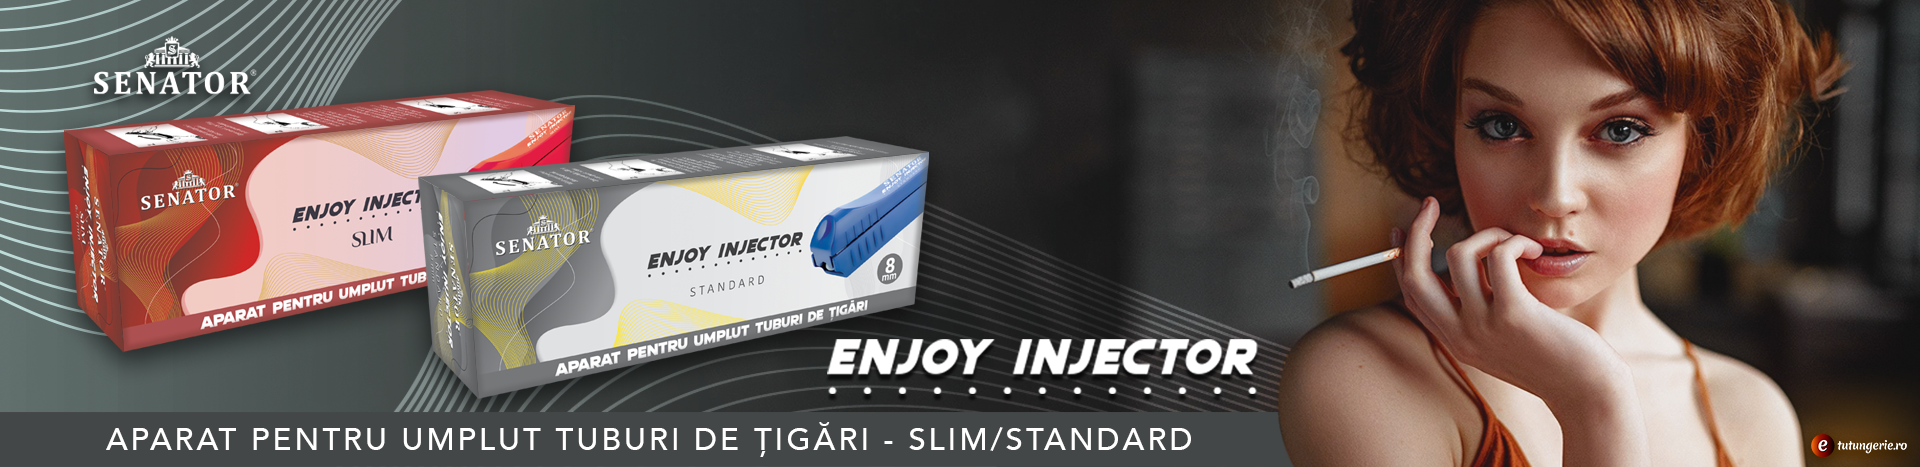 Enjoy Injector